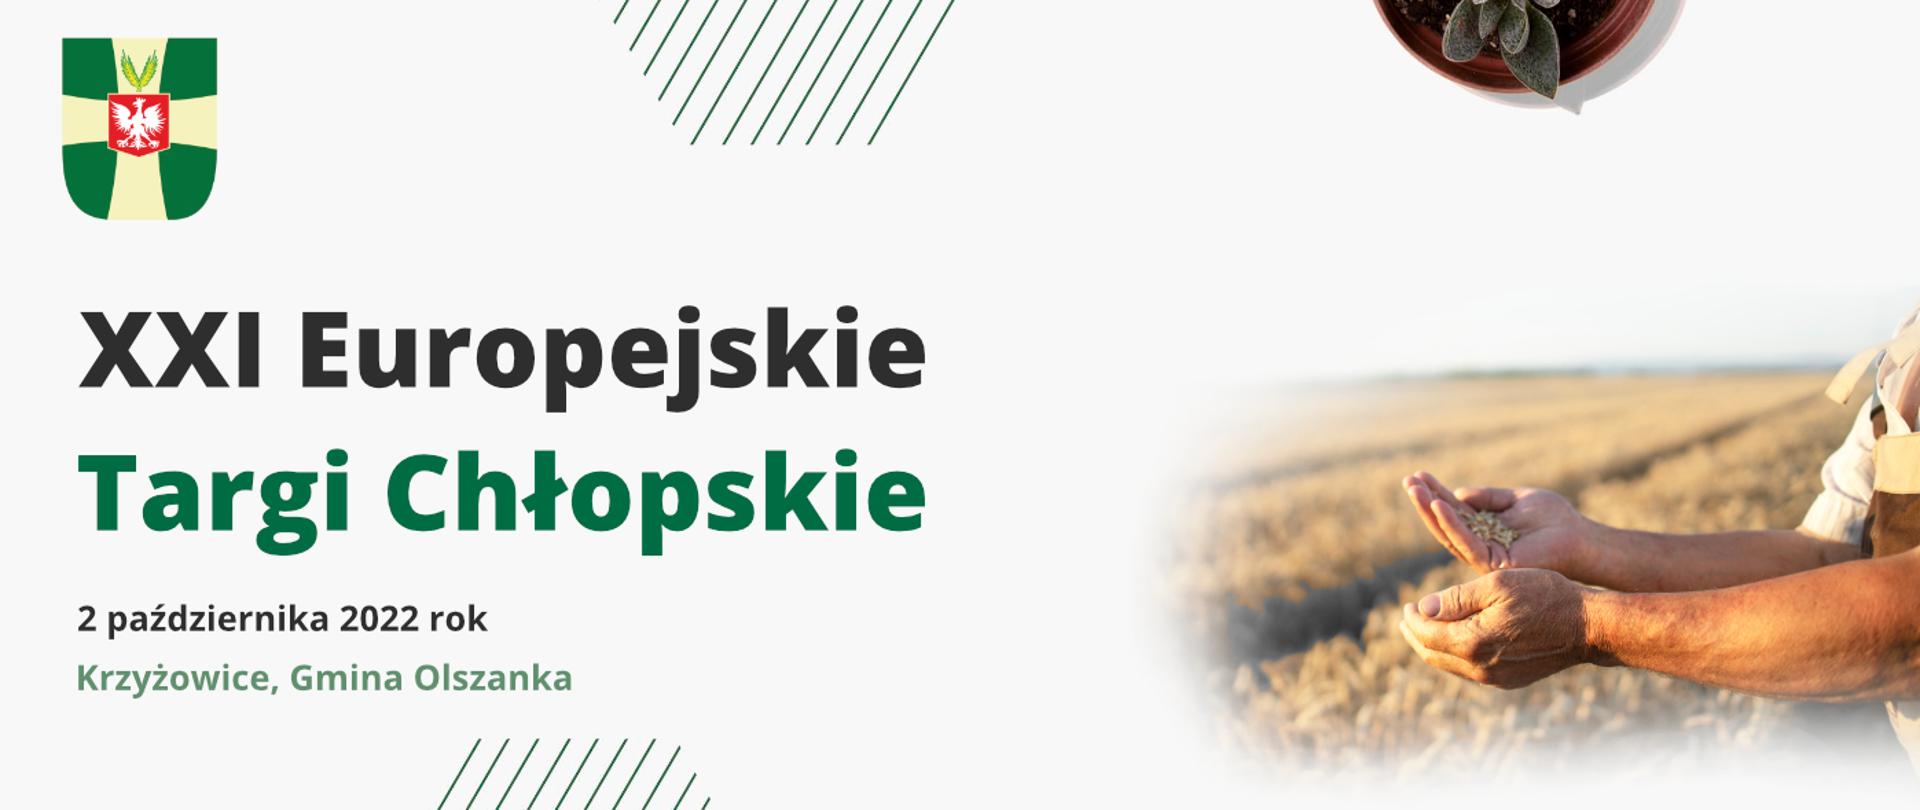 Baner zawierający napis "XXI Europejskie Targi Chłopskie" oraz datę wydarzenia - 2 października 2022 rok